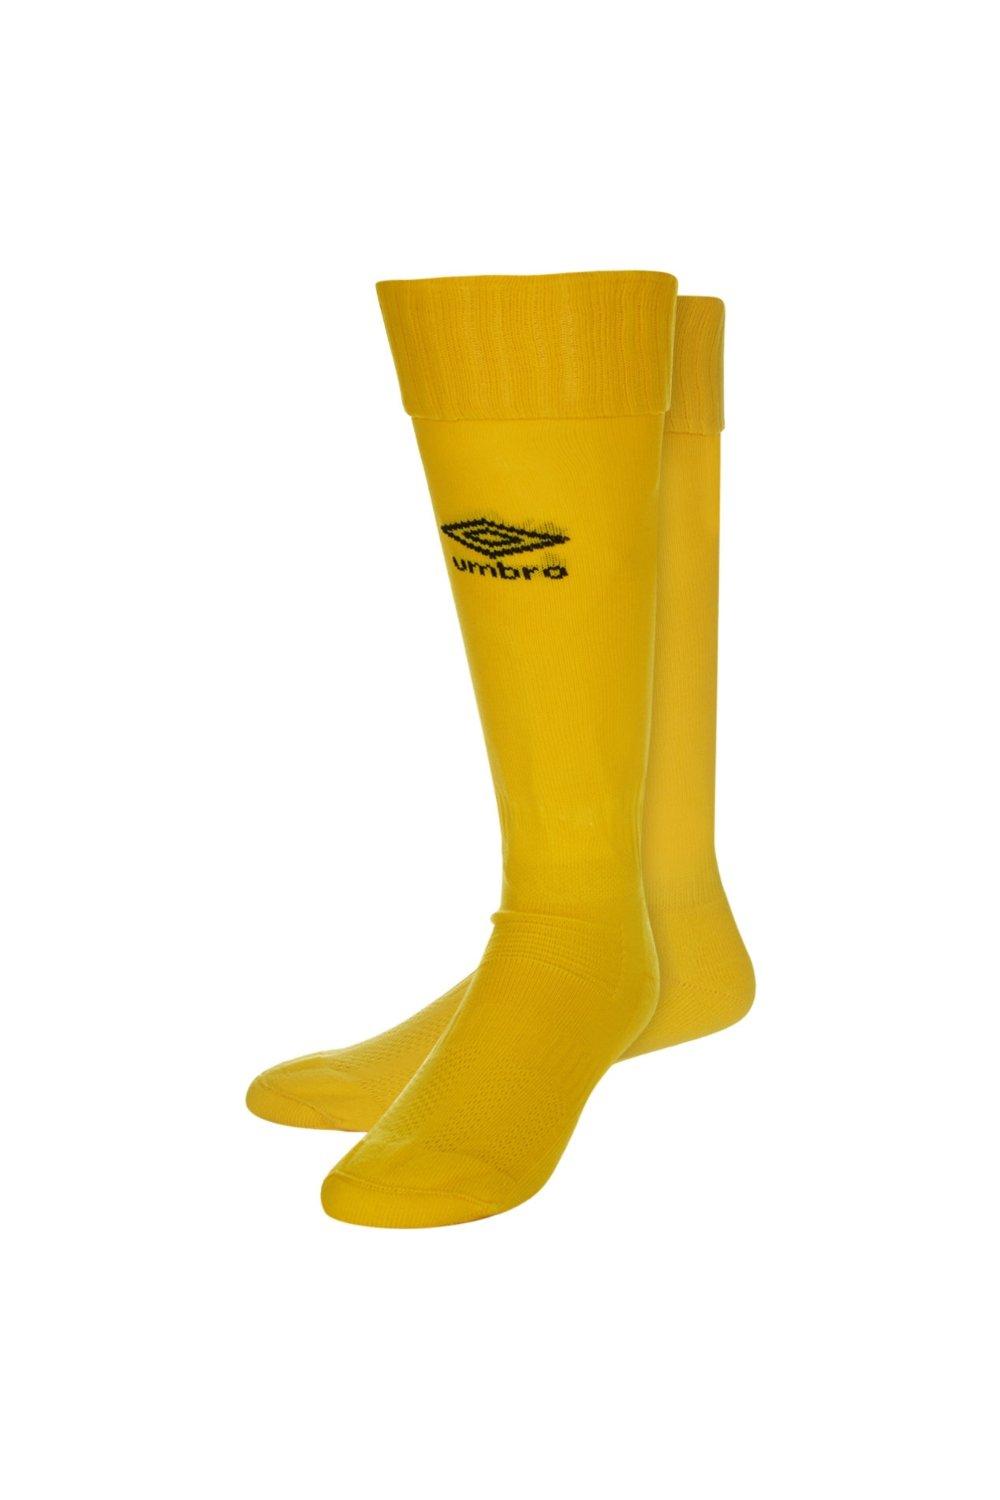 Футбольные носки Classico Umbro, желтый